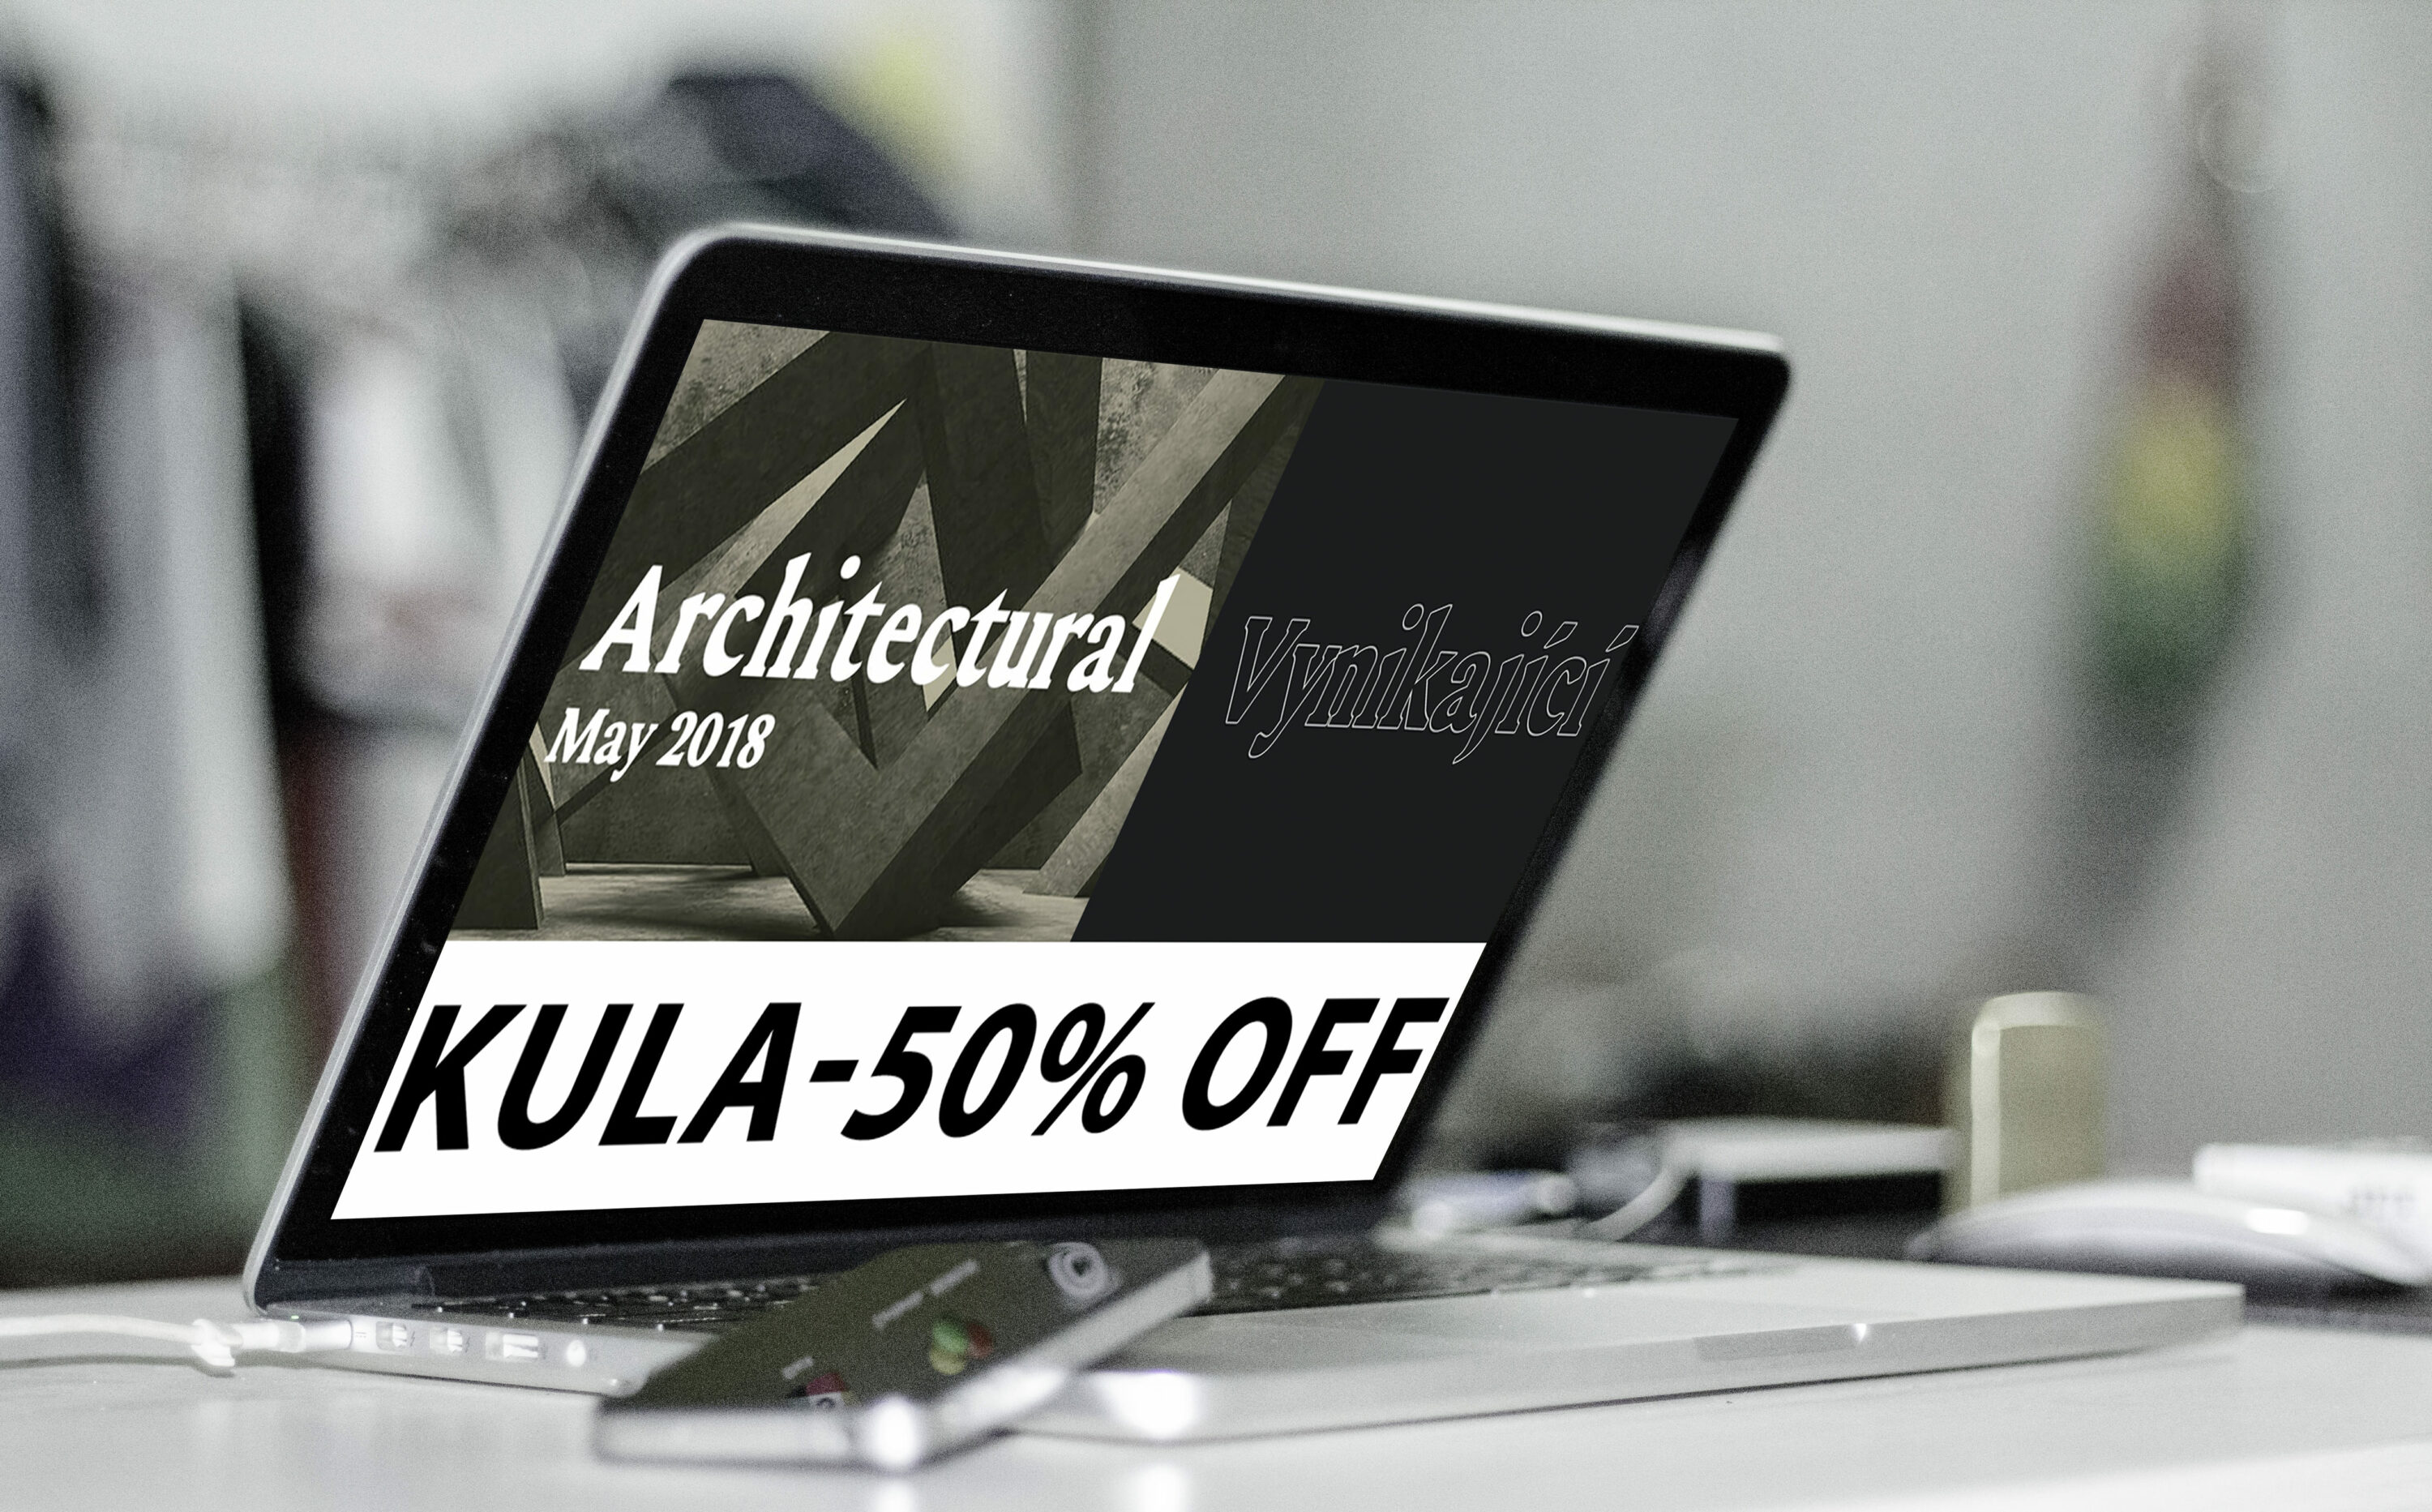 Laptop option of the Kula-50% off.